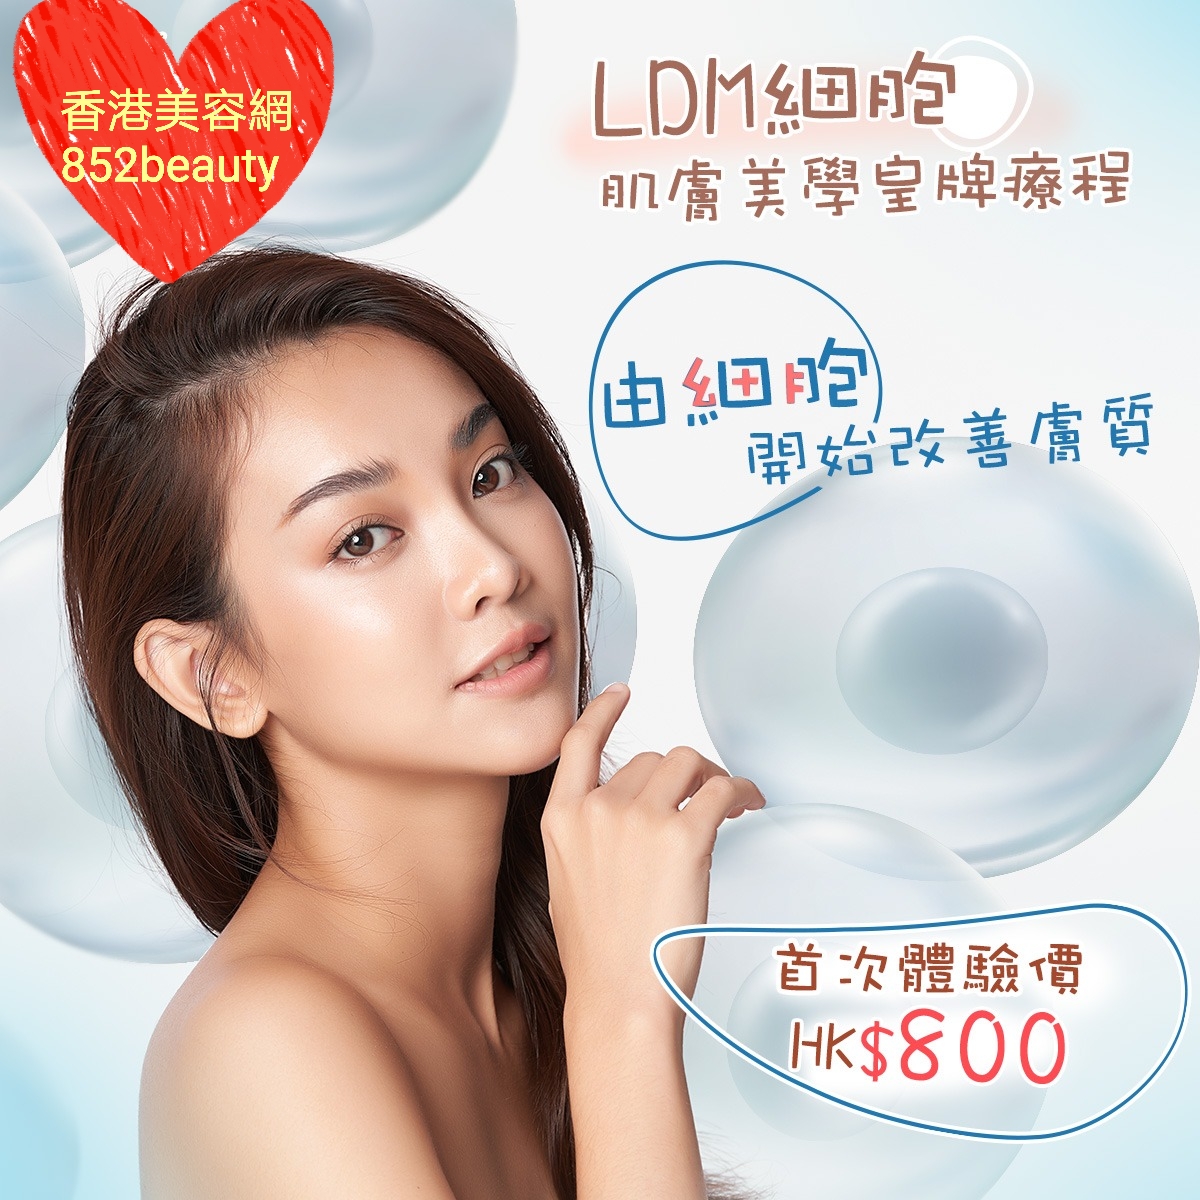 最新美容优惠美容優惠 - 全港區] LDM細胞肌膚美學療程✨首次體驗價: HK$800 @ 香港美容网 Hong Kong Beauty Salon